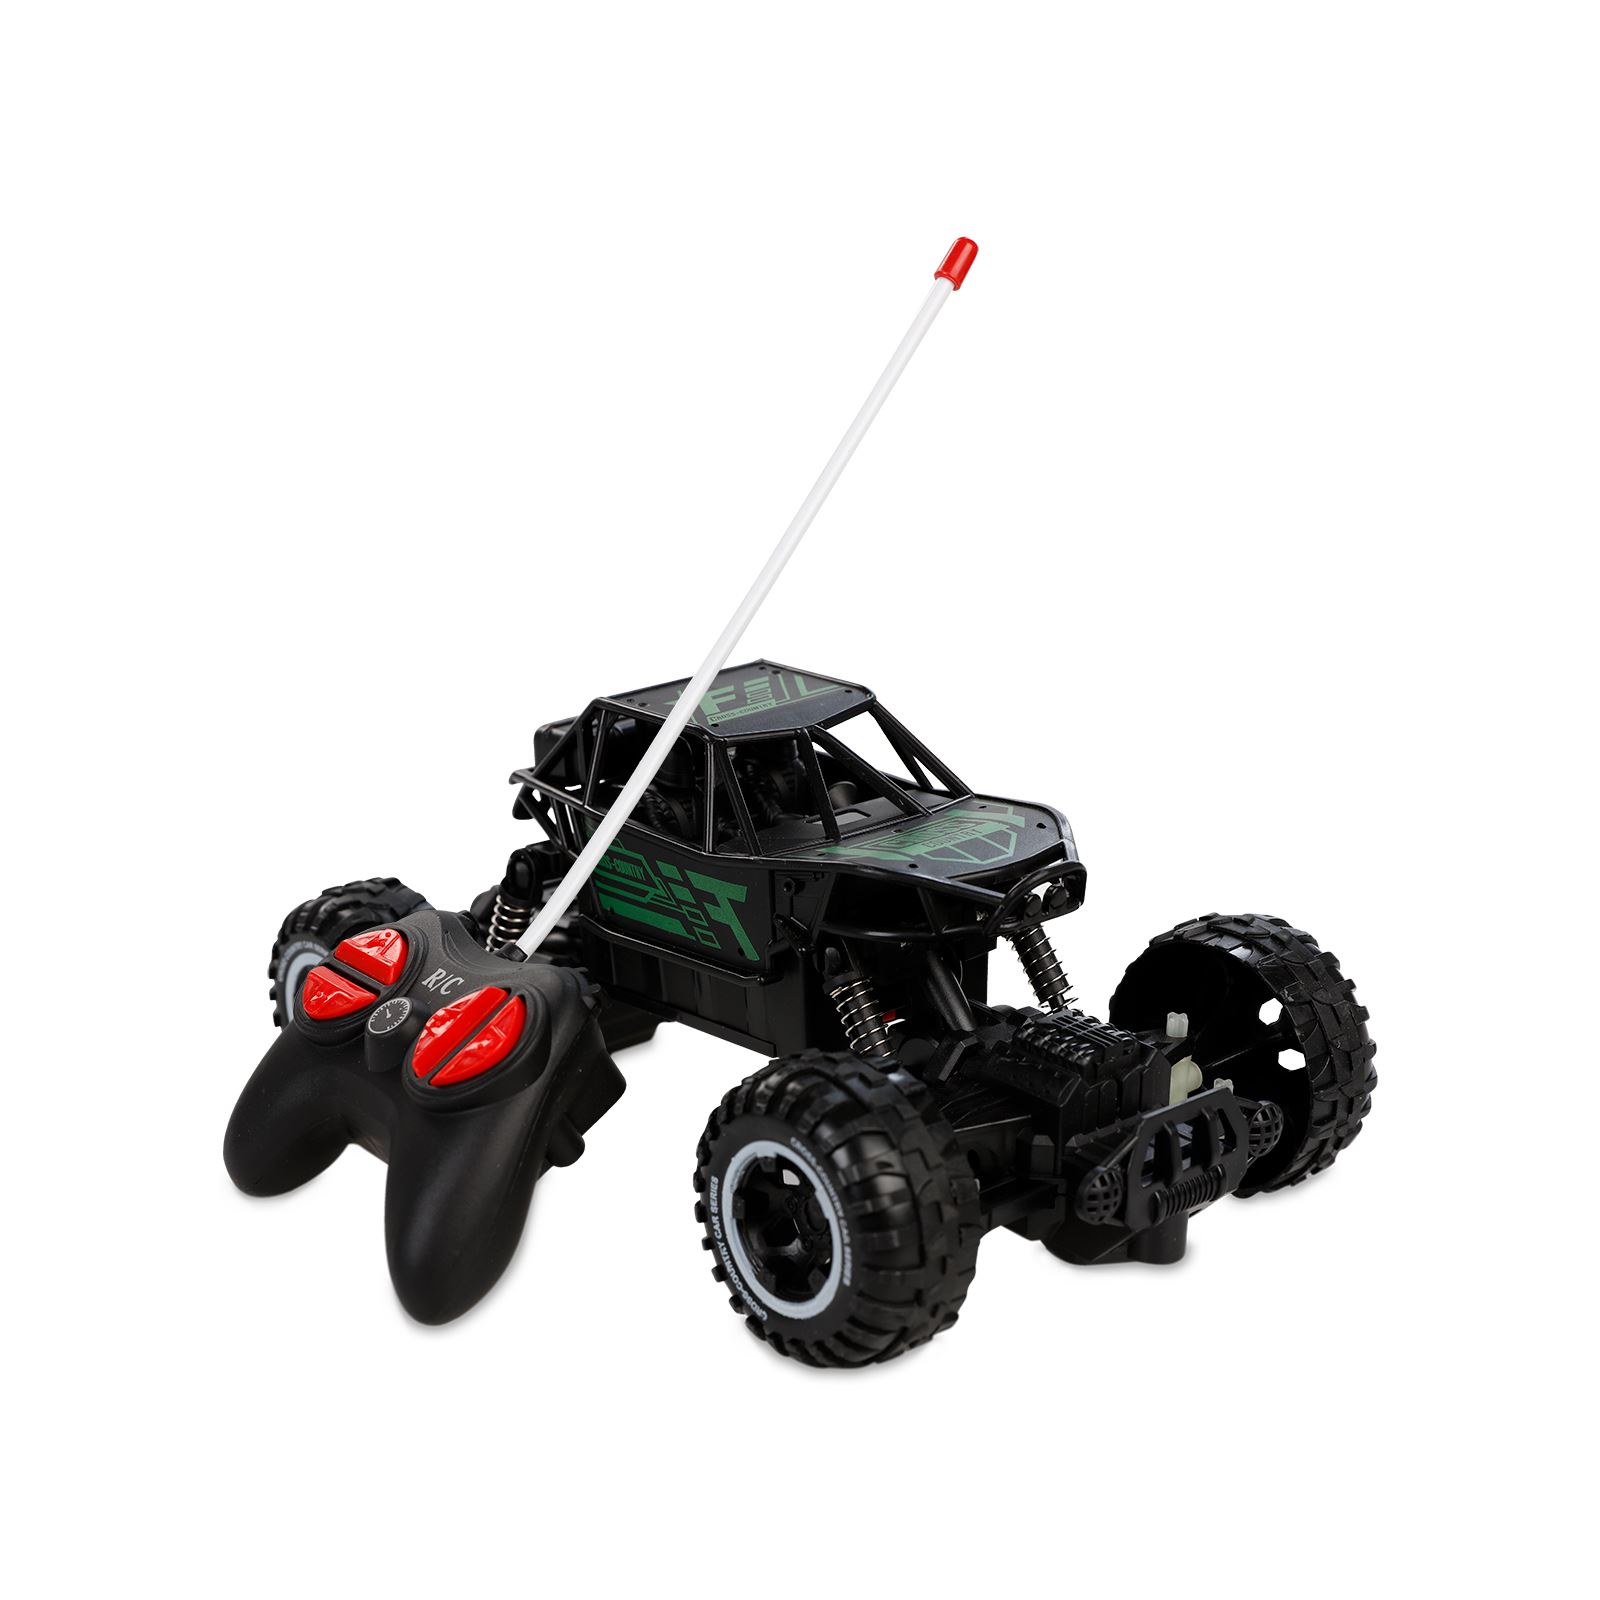 Can Oyuncak Kutulu Mini Rock Crawler Uzaktan Kumandalı Araba